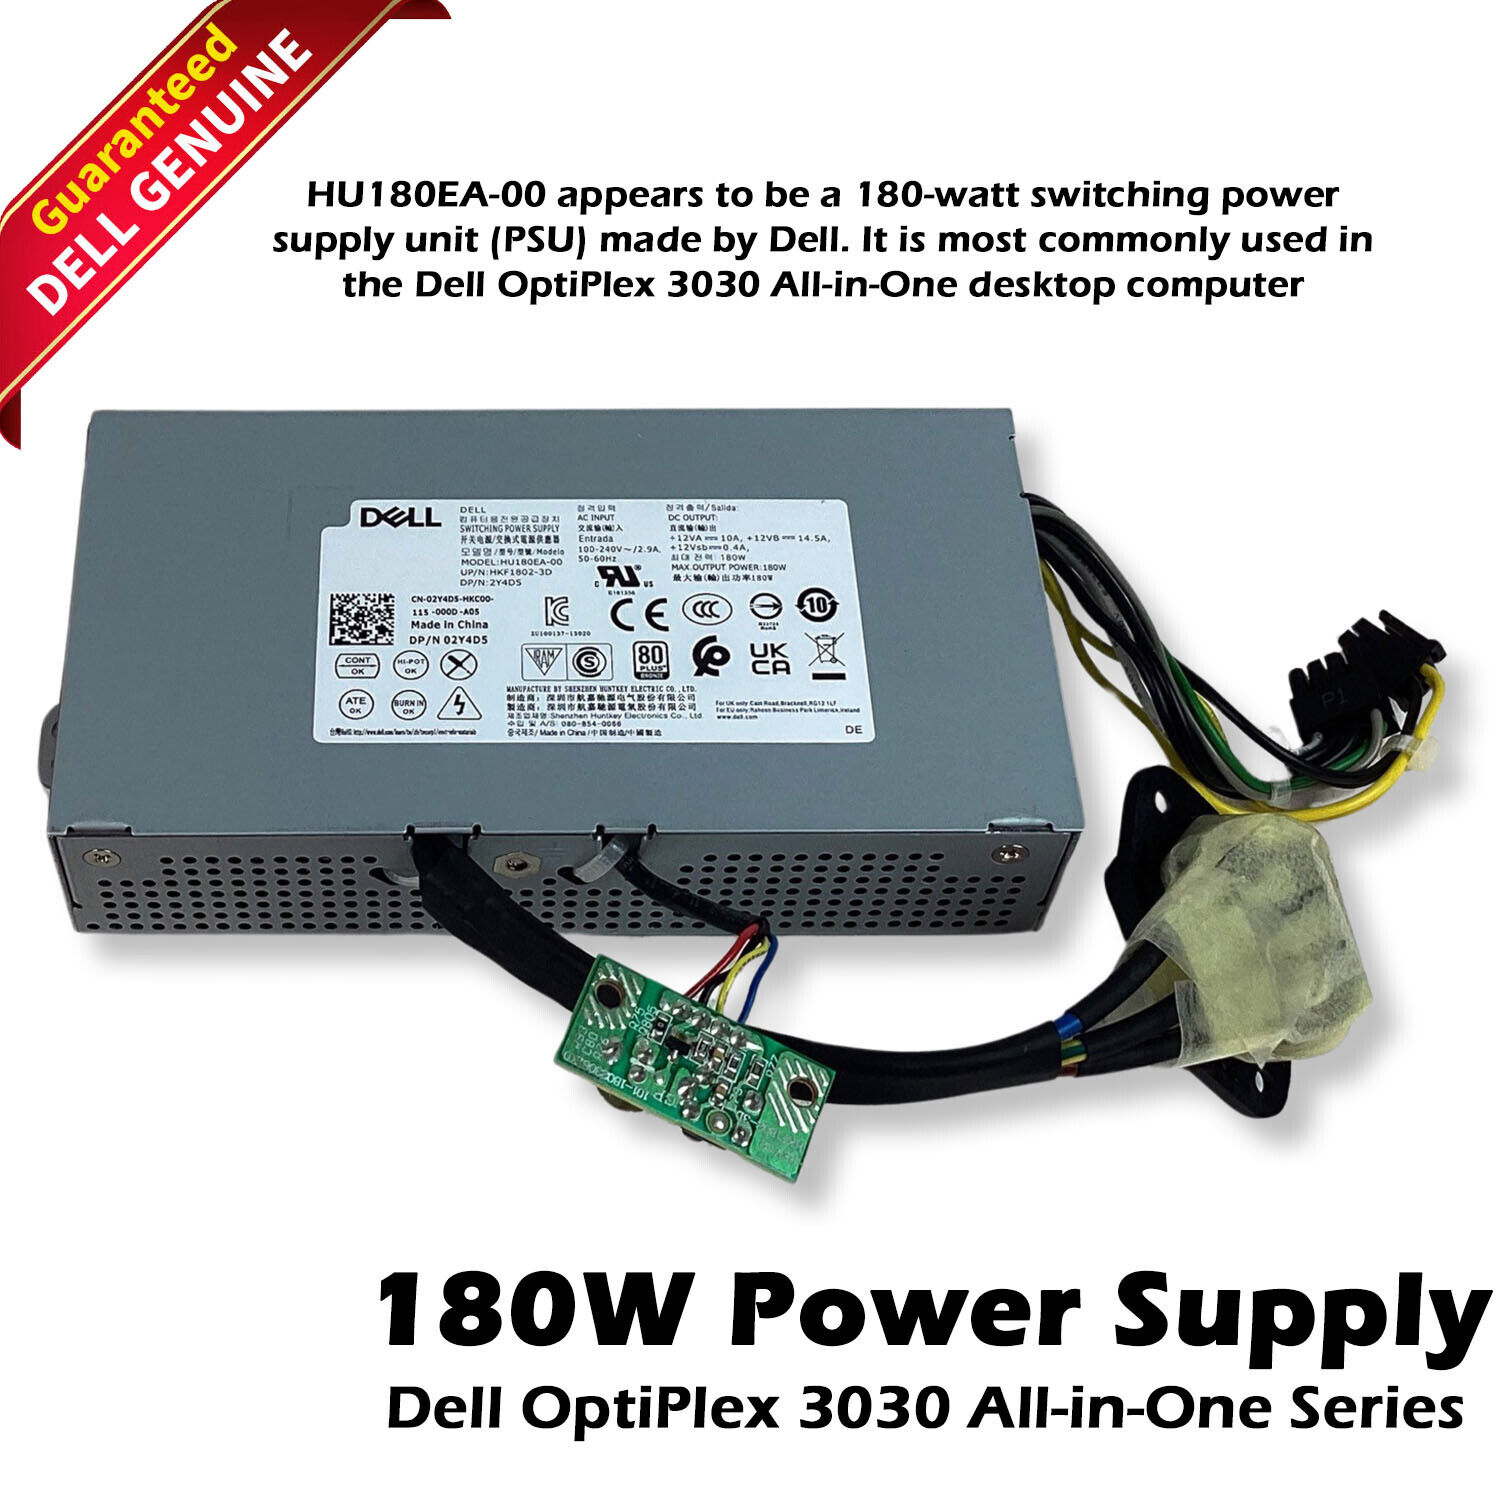 Genuine Dell Optiplex 3030 AIO 180W Switching Power Supply HU180EA-00 2Y4D5